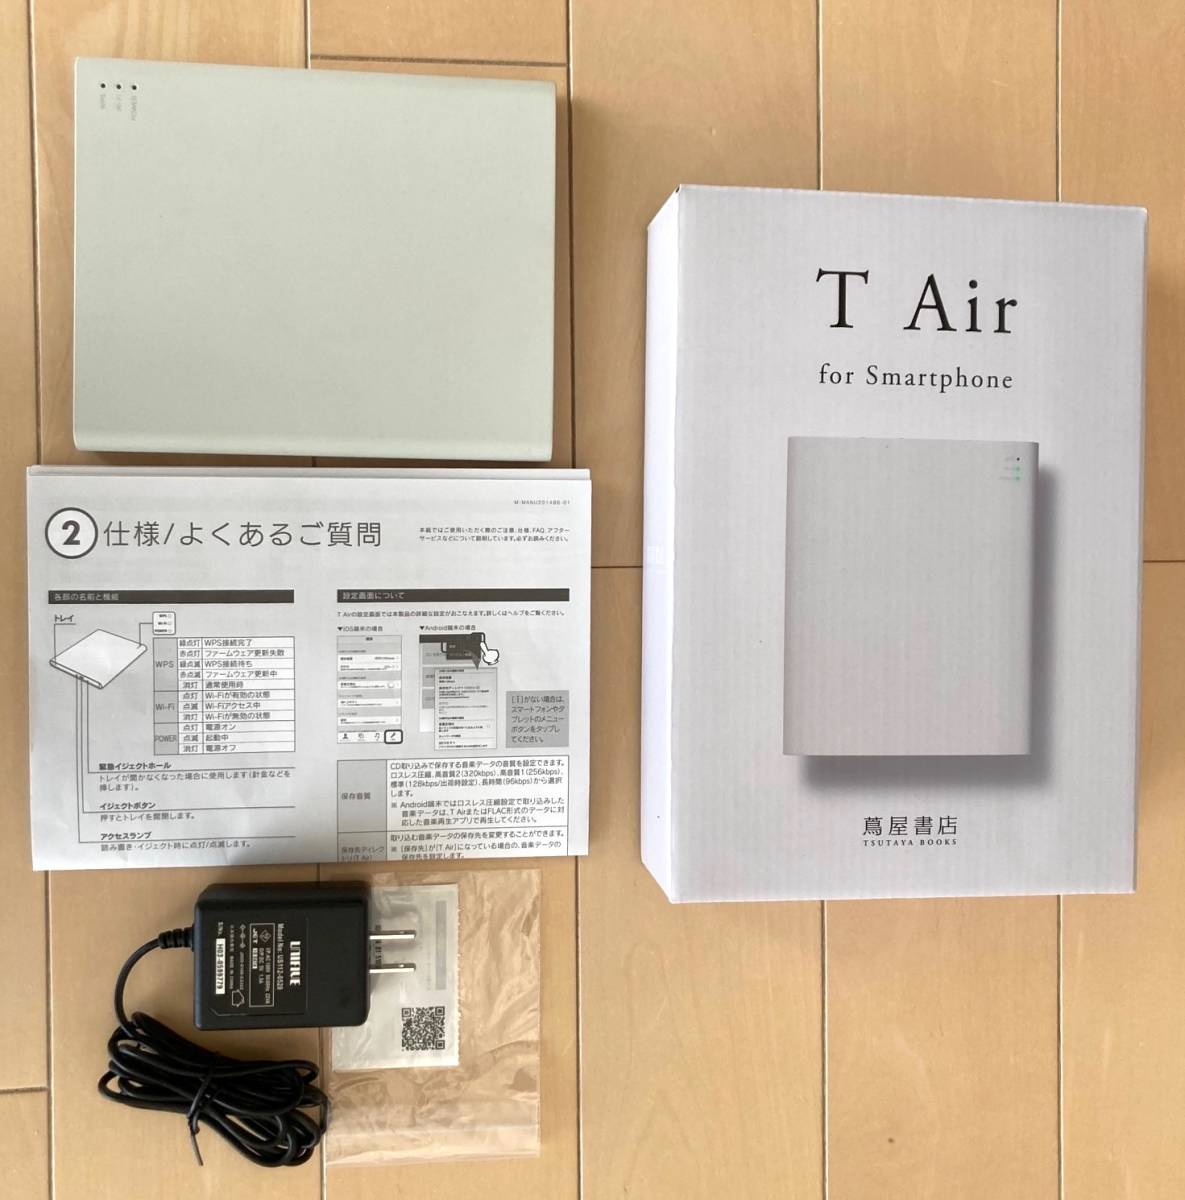 蔦屋 TSUTAYA ワイヤレス CDドライブ T Air for Smartphone TAIR-D01LG